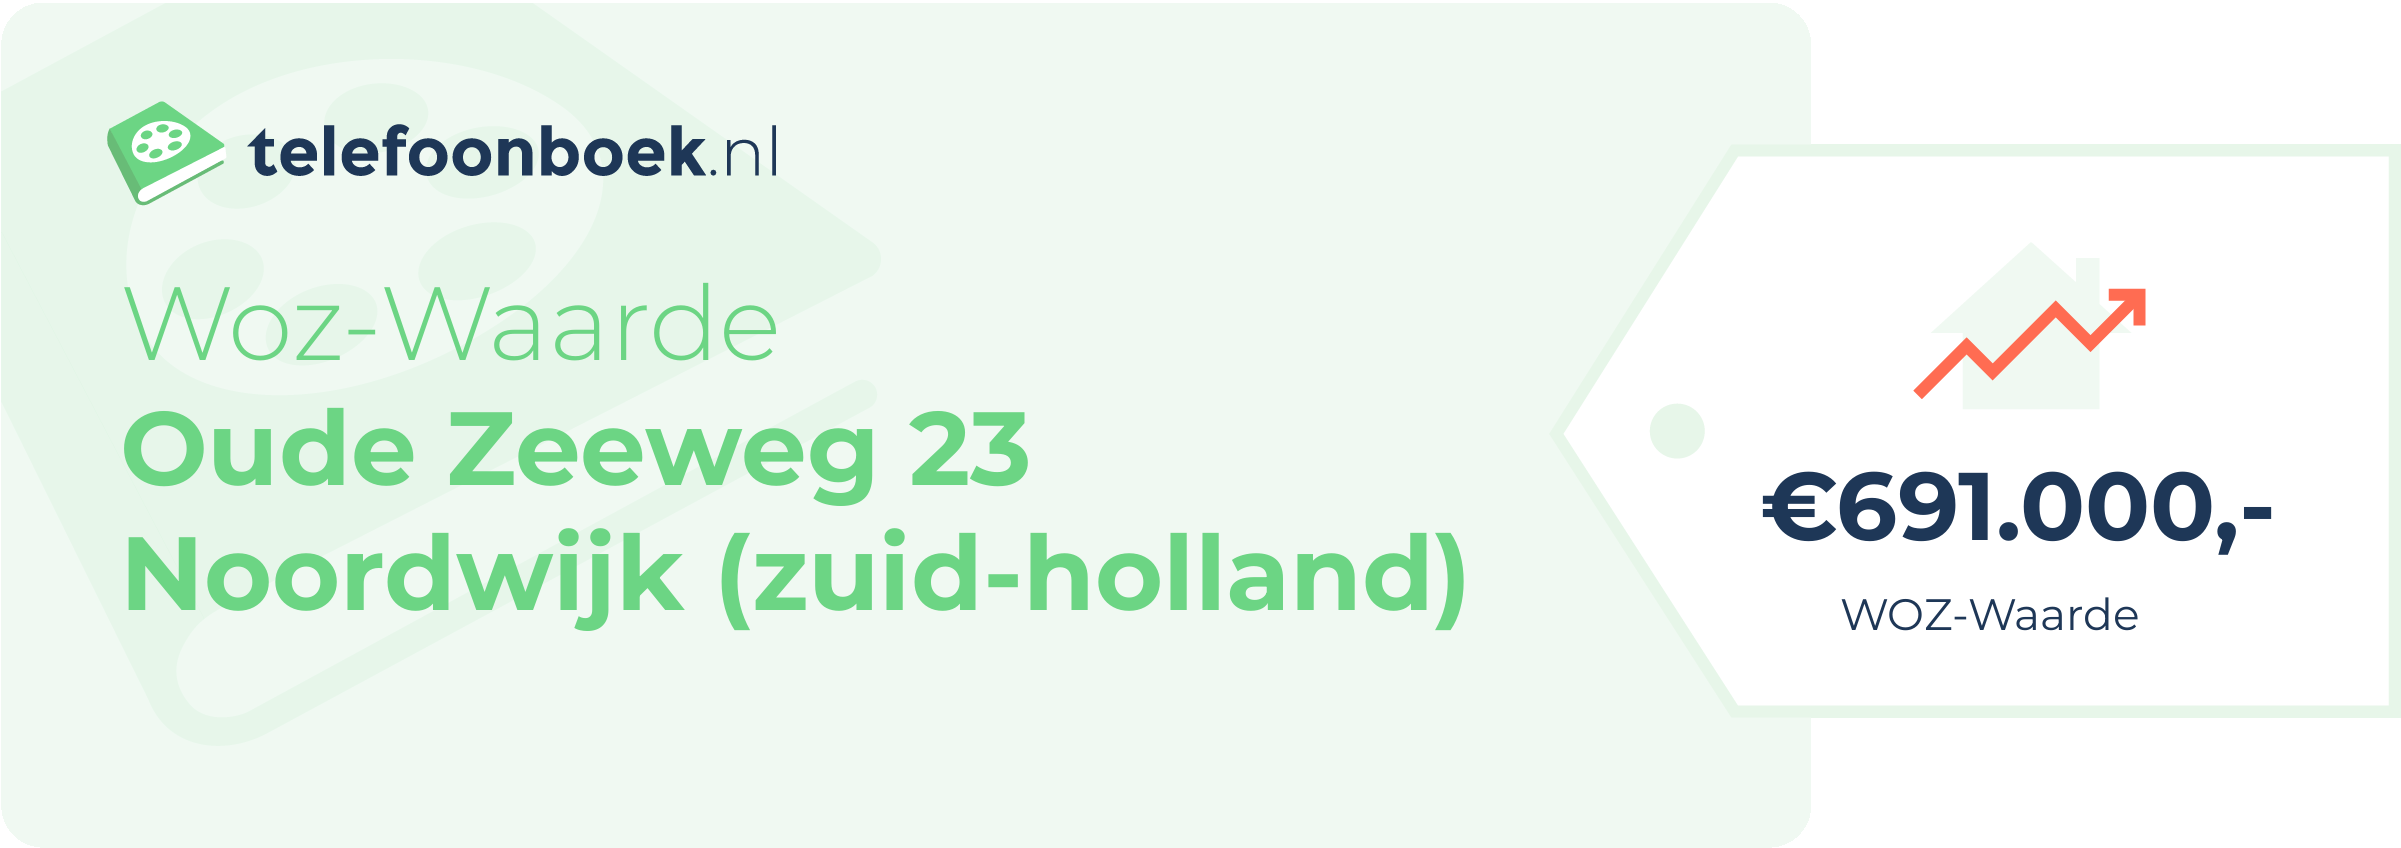 WOZ-waarde Oude Zeeweg 23 Noordwijk (Zuid-Holland)